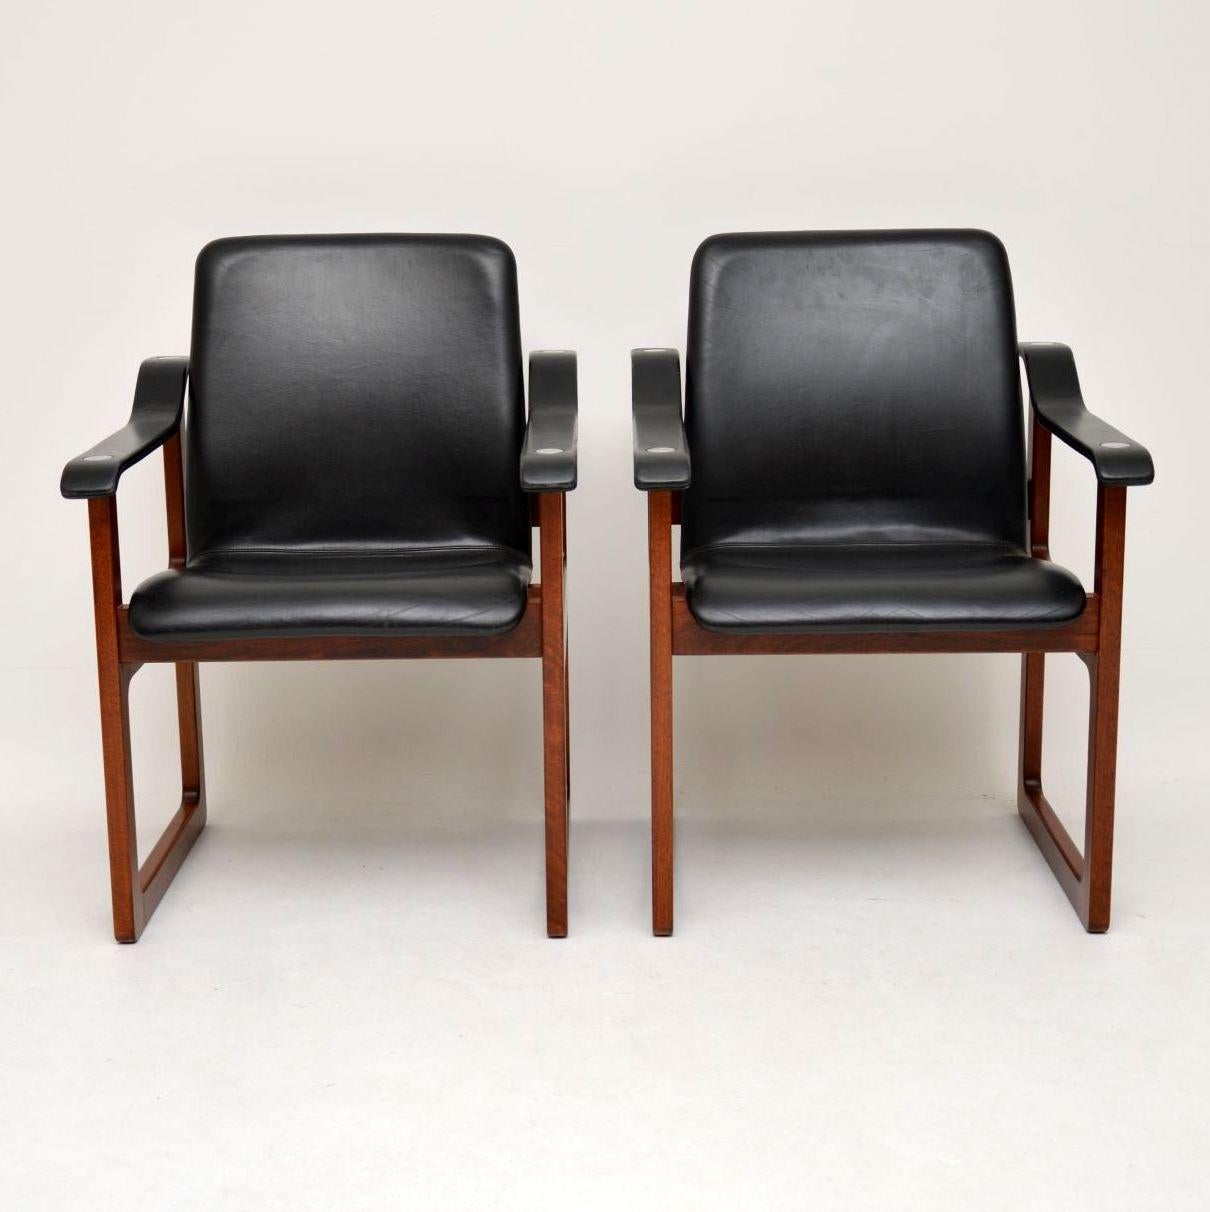 Ein absolut atemberaubendes und sehr seltenes Paar dänischer Vintage-Sessel aus Massivholz mit schwarzer Lederpolsterung und Chromverzierungen an den Oberarmen. Diese wurden von Dyrlund hergestellt, etwa in den 1970er Jahren, wir haben dieses Modell